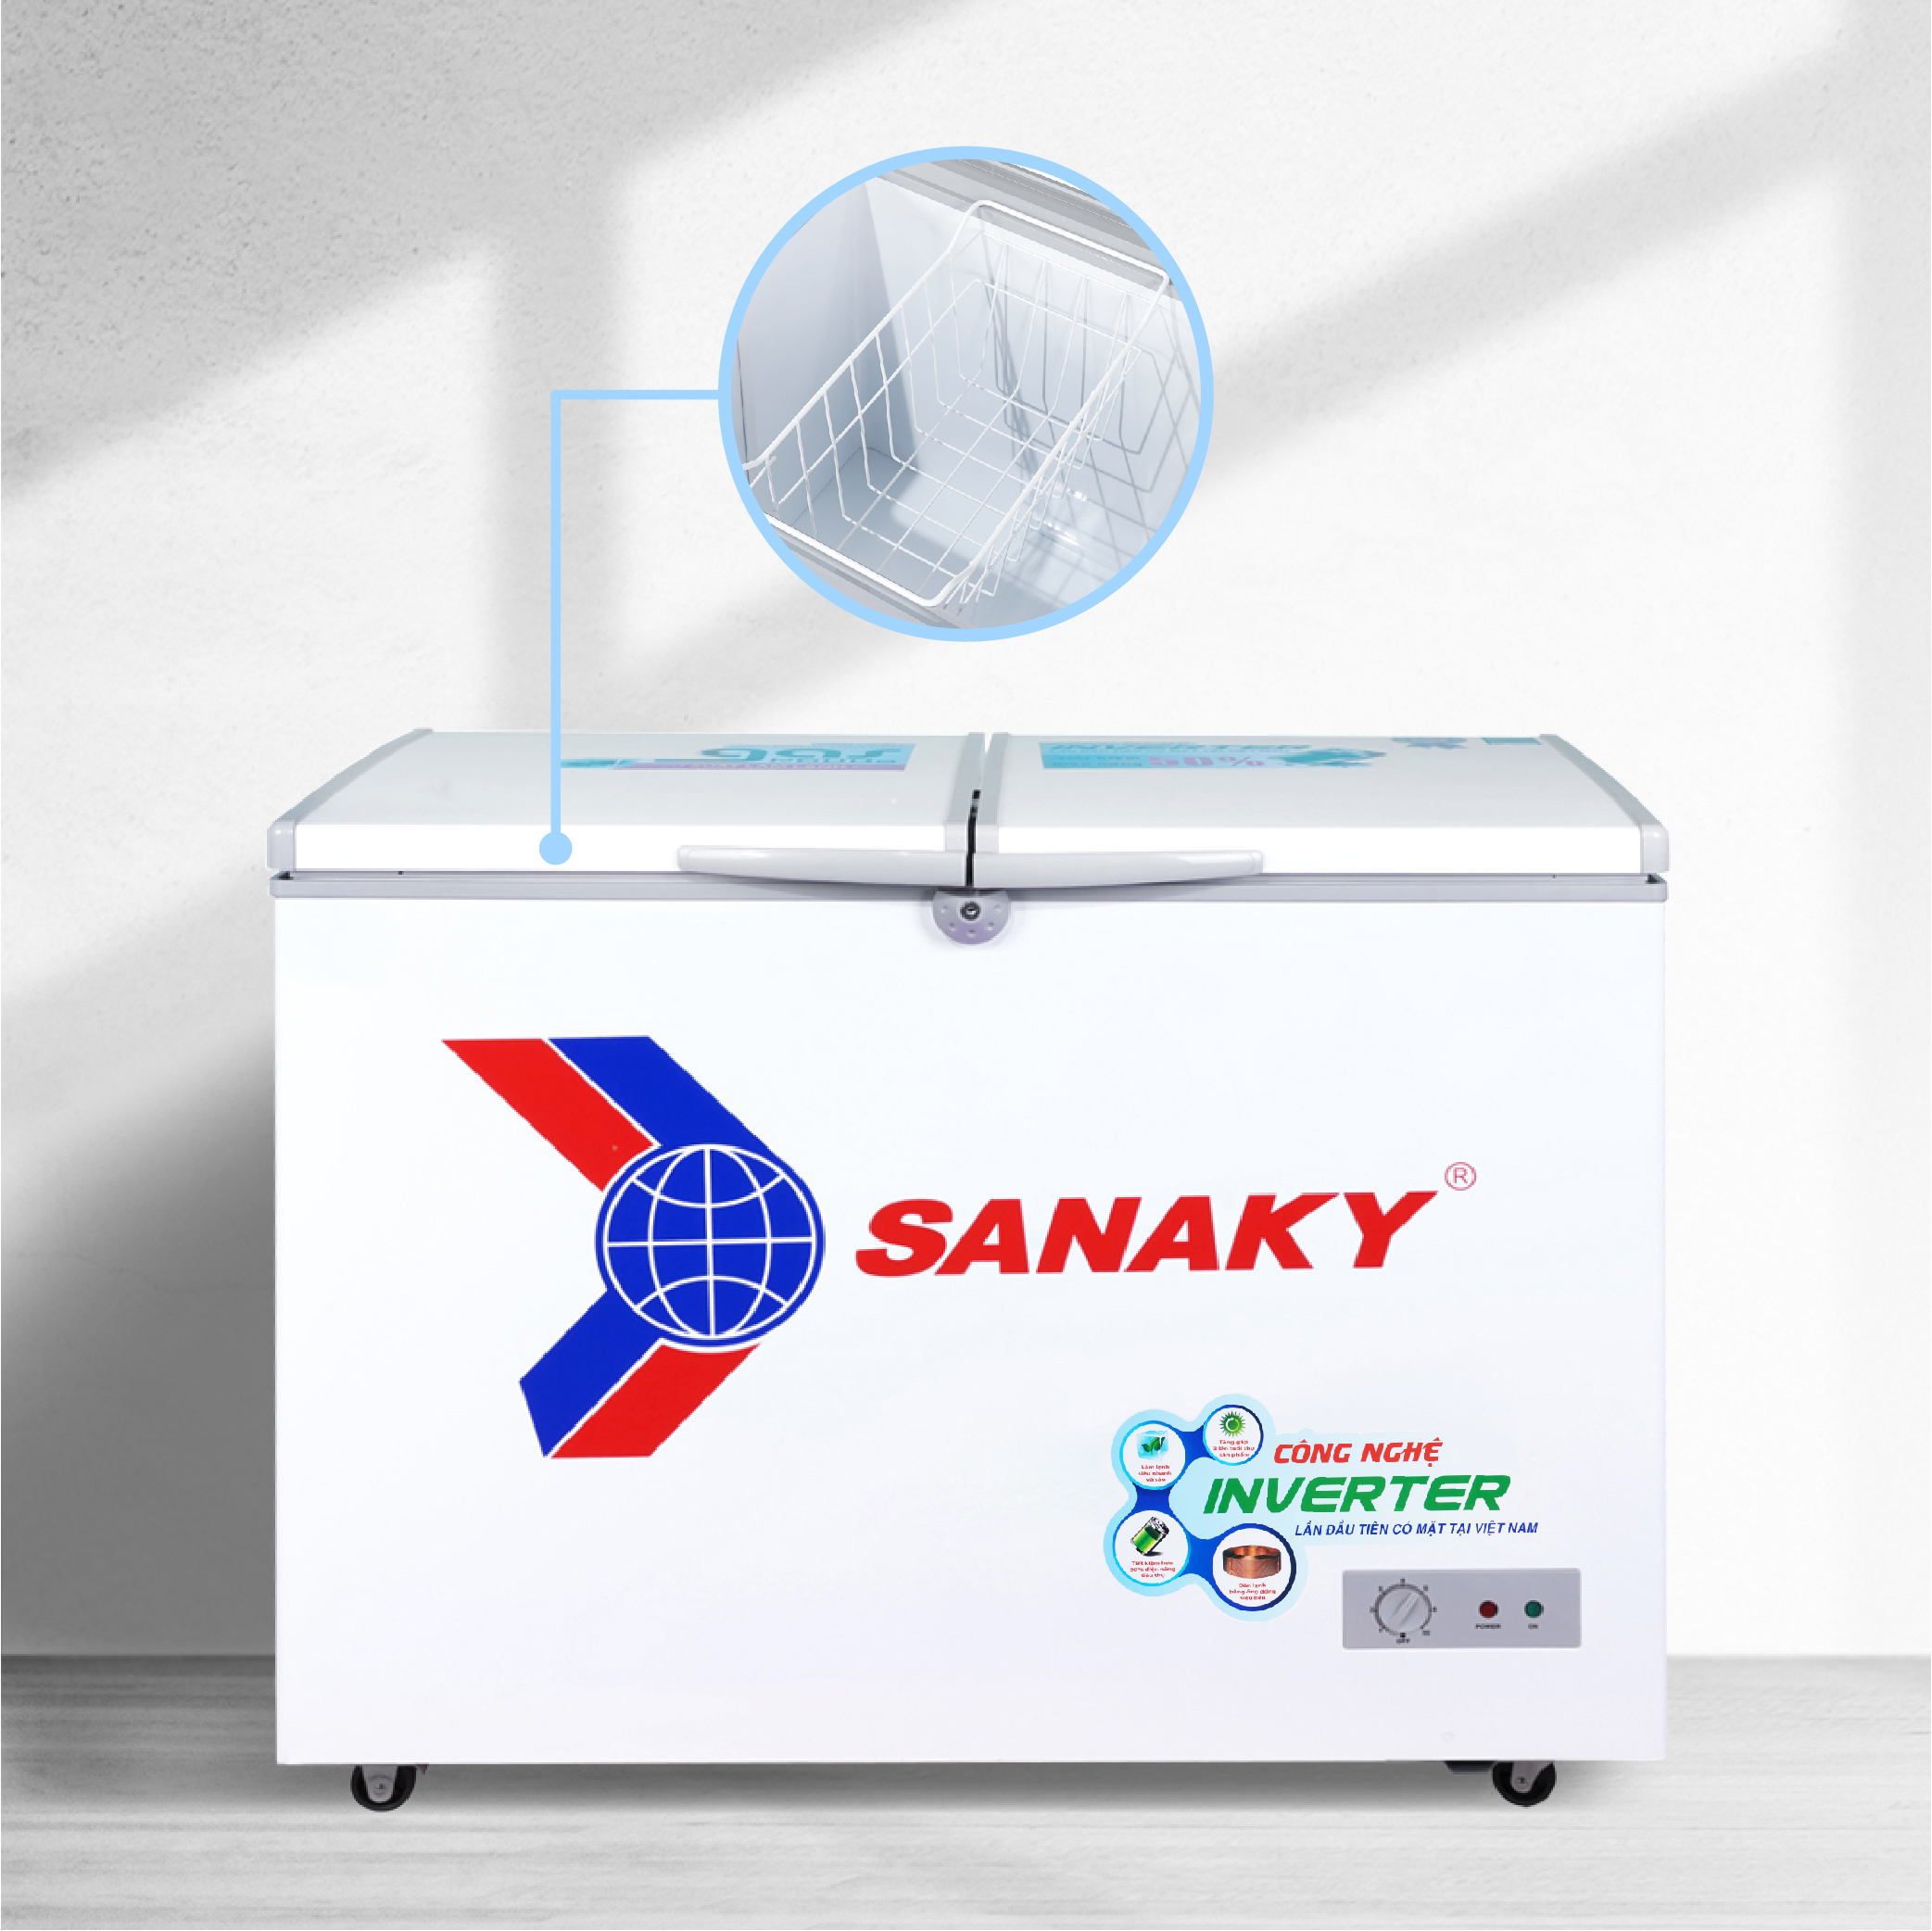 Tủ Đông Sanaky VH-2899A3 235 lít, 1 ngăn đông, inverter, dàn lạnh đồng